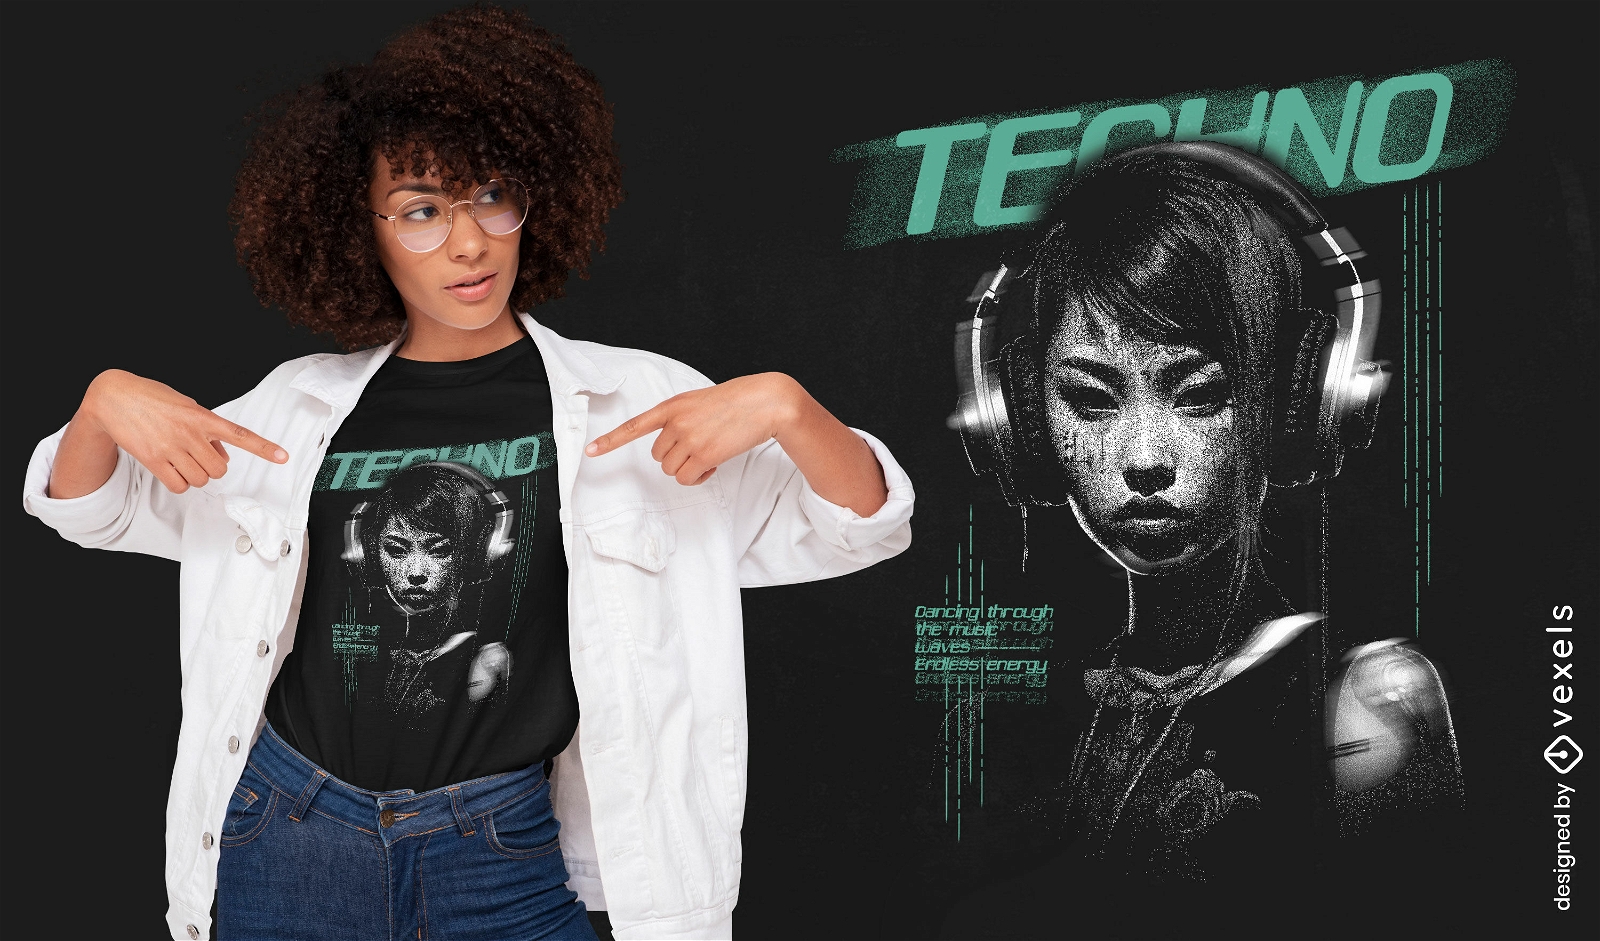 Diseño de camiseta de música techno futurista.